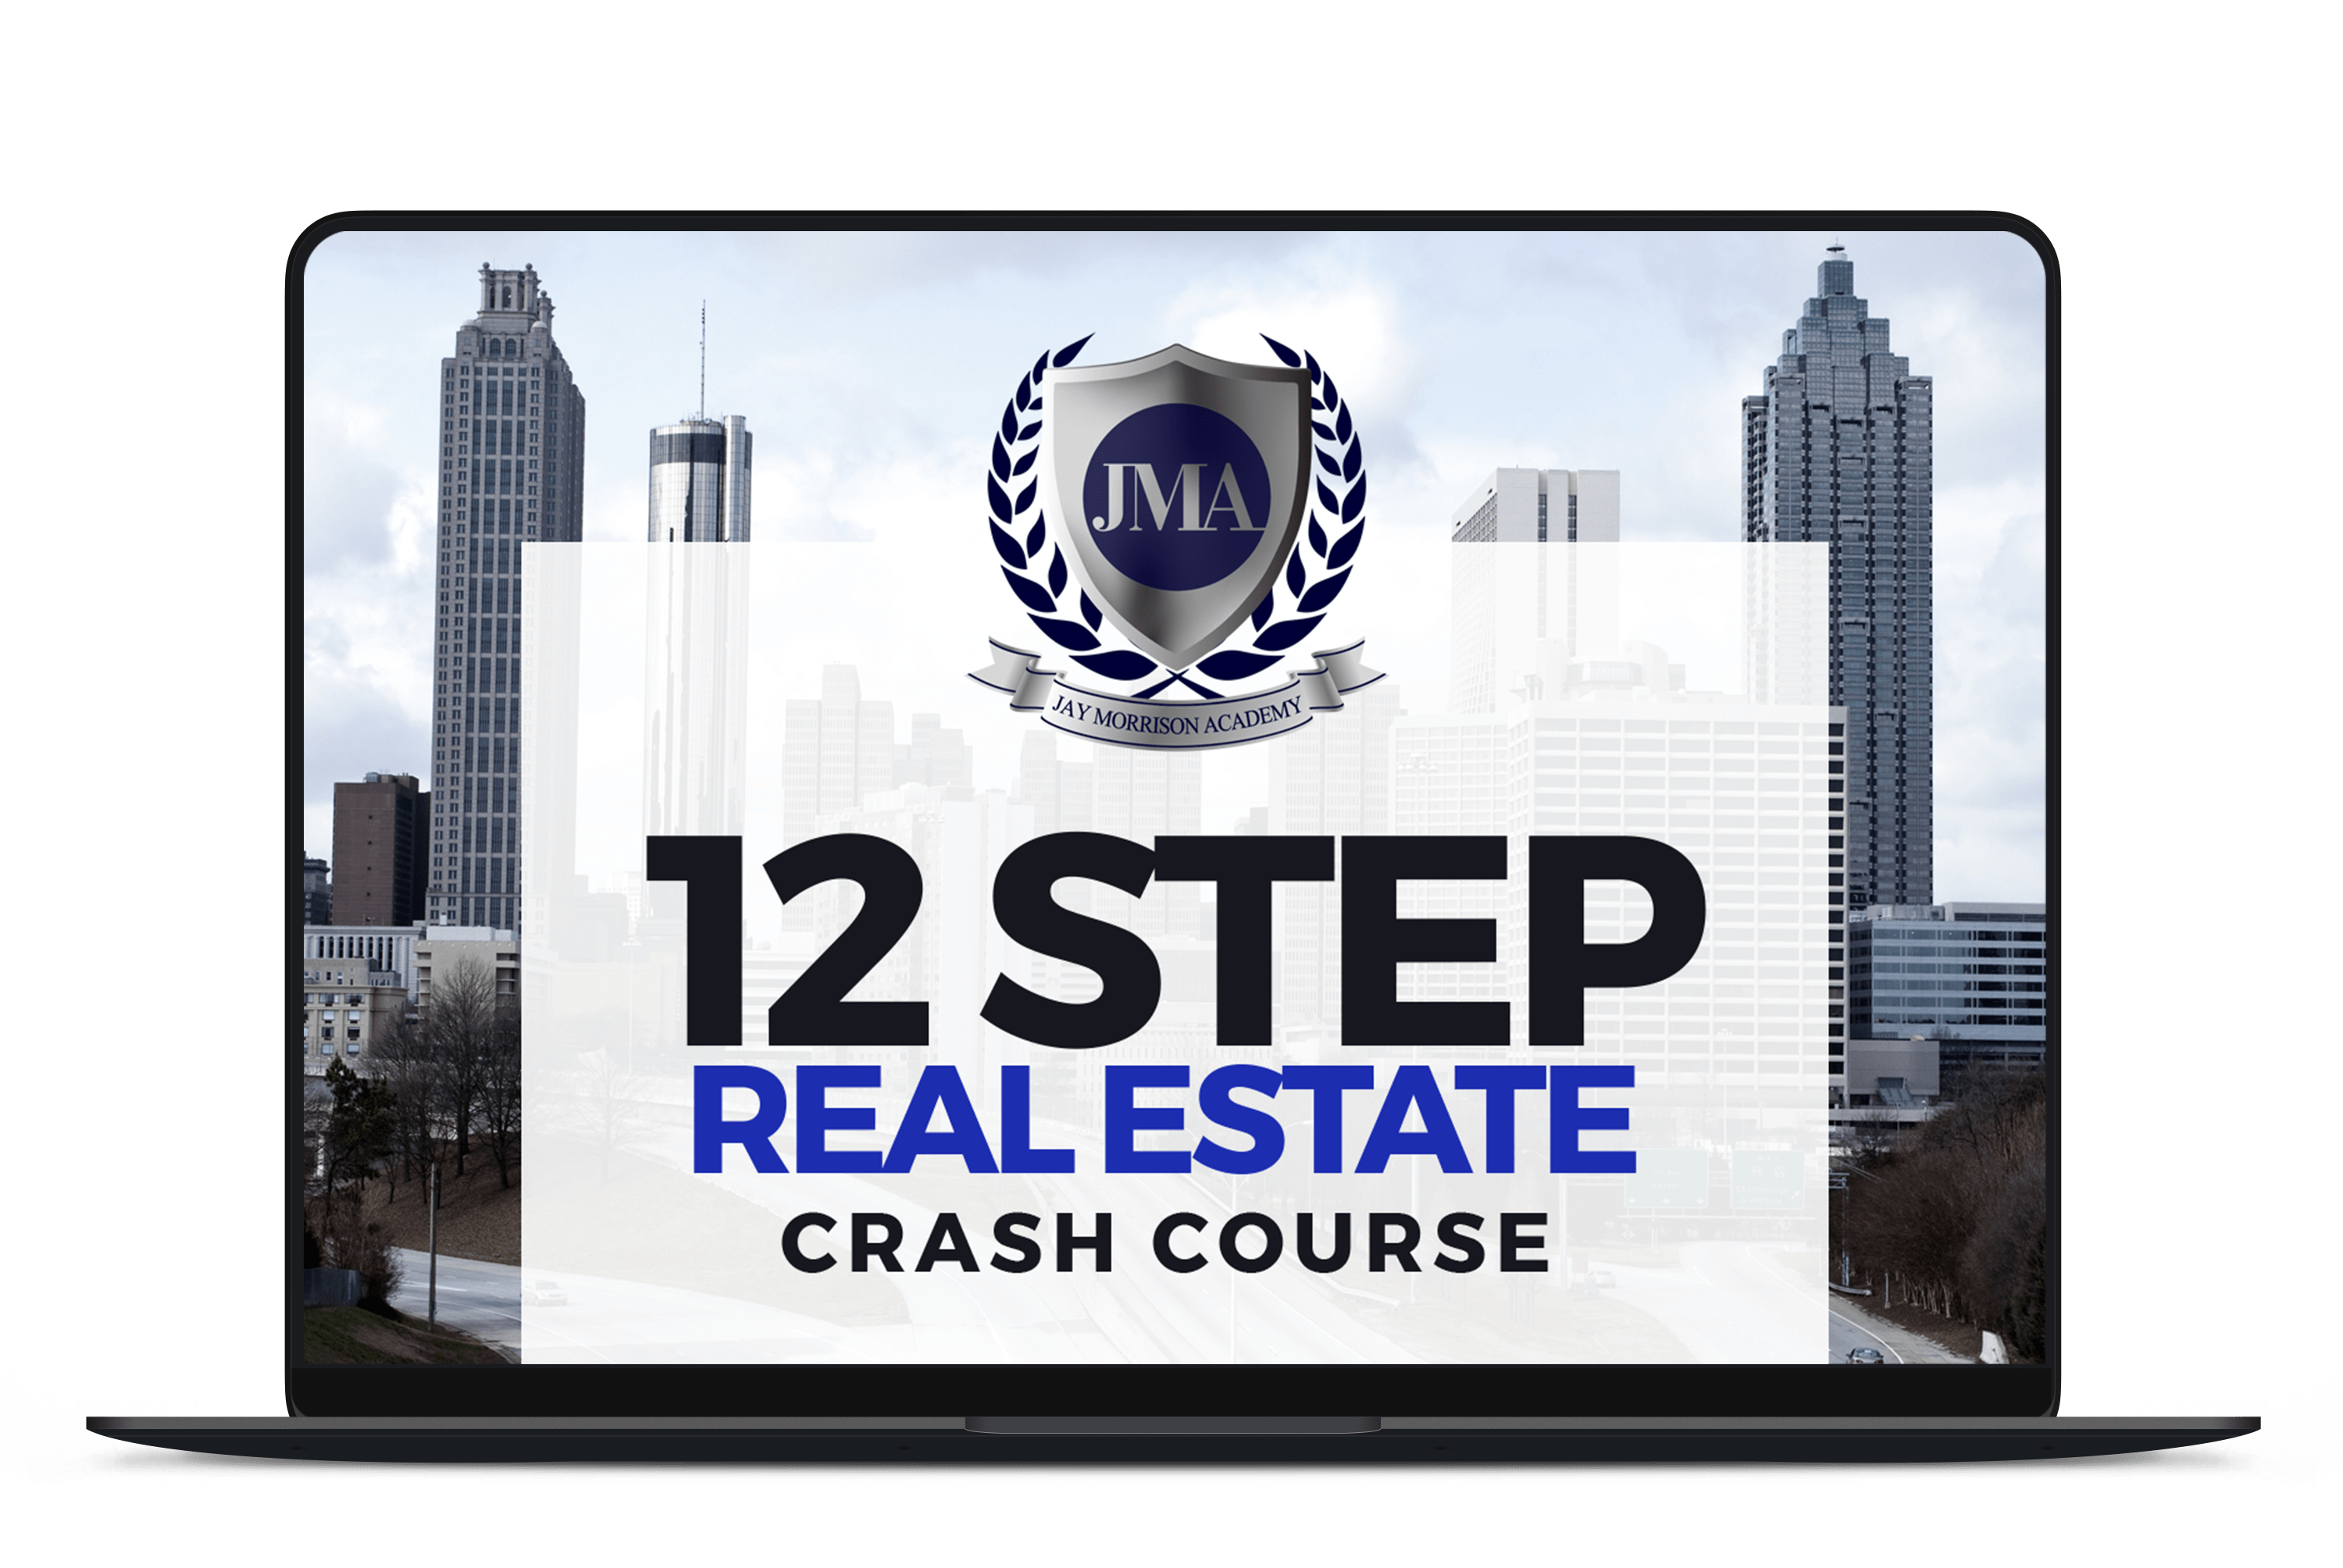 JAY MORRISON - 12 Step Real Estate Entrepreneur and Business Owner Crash Course